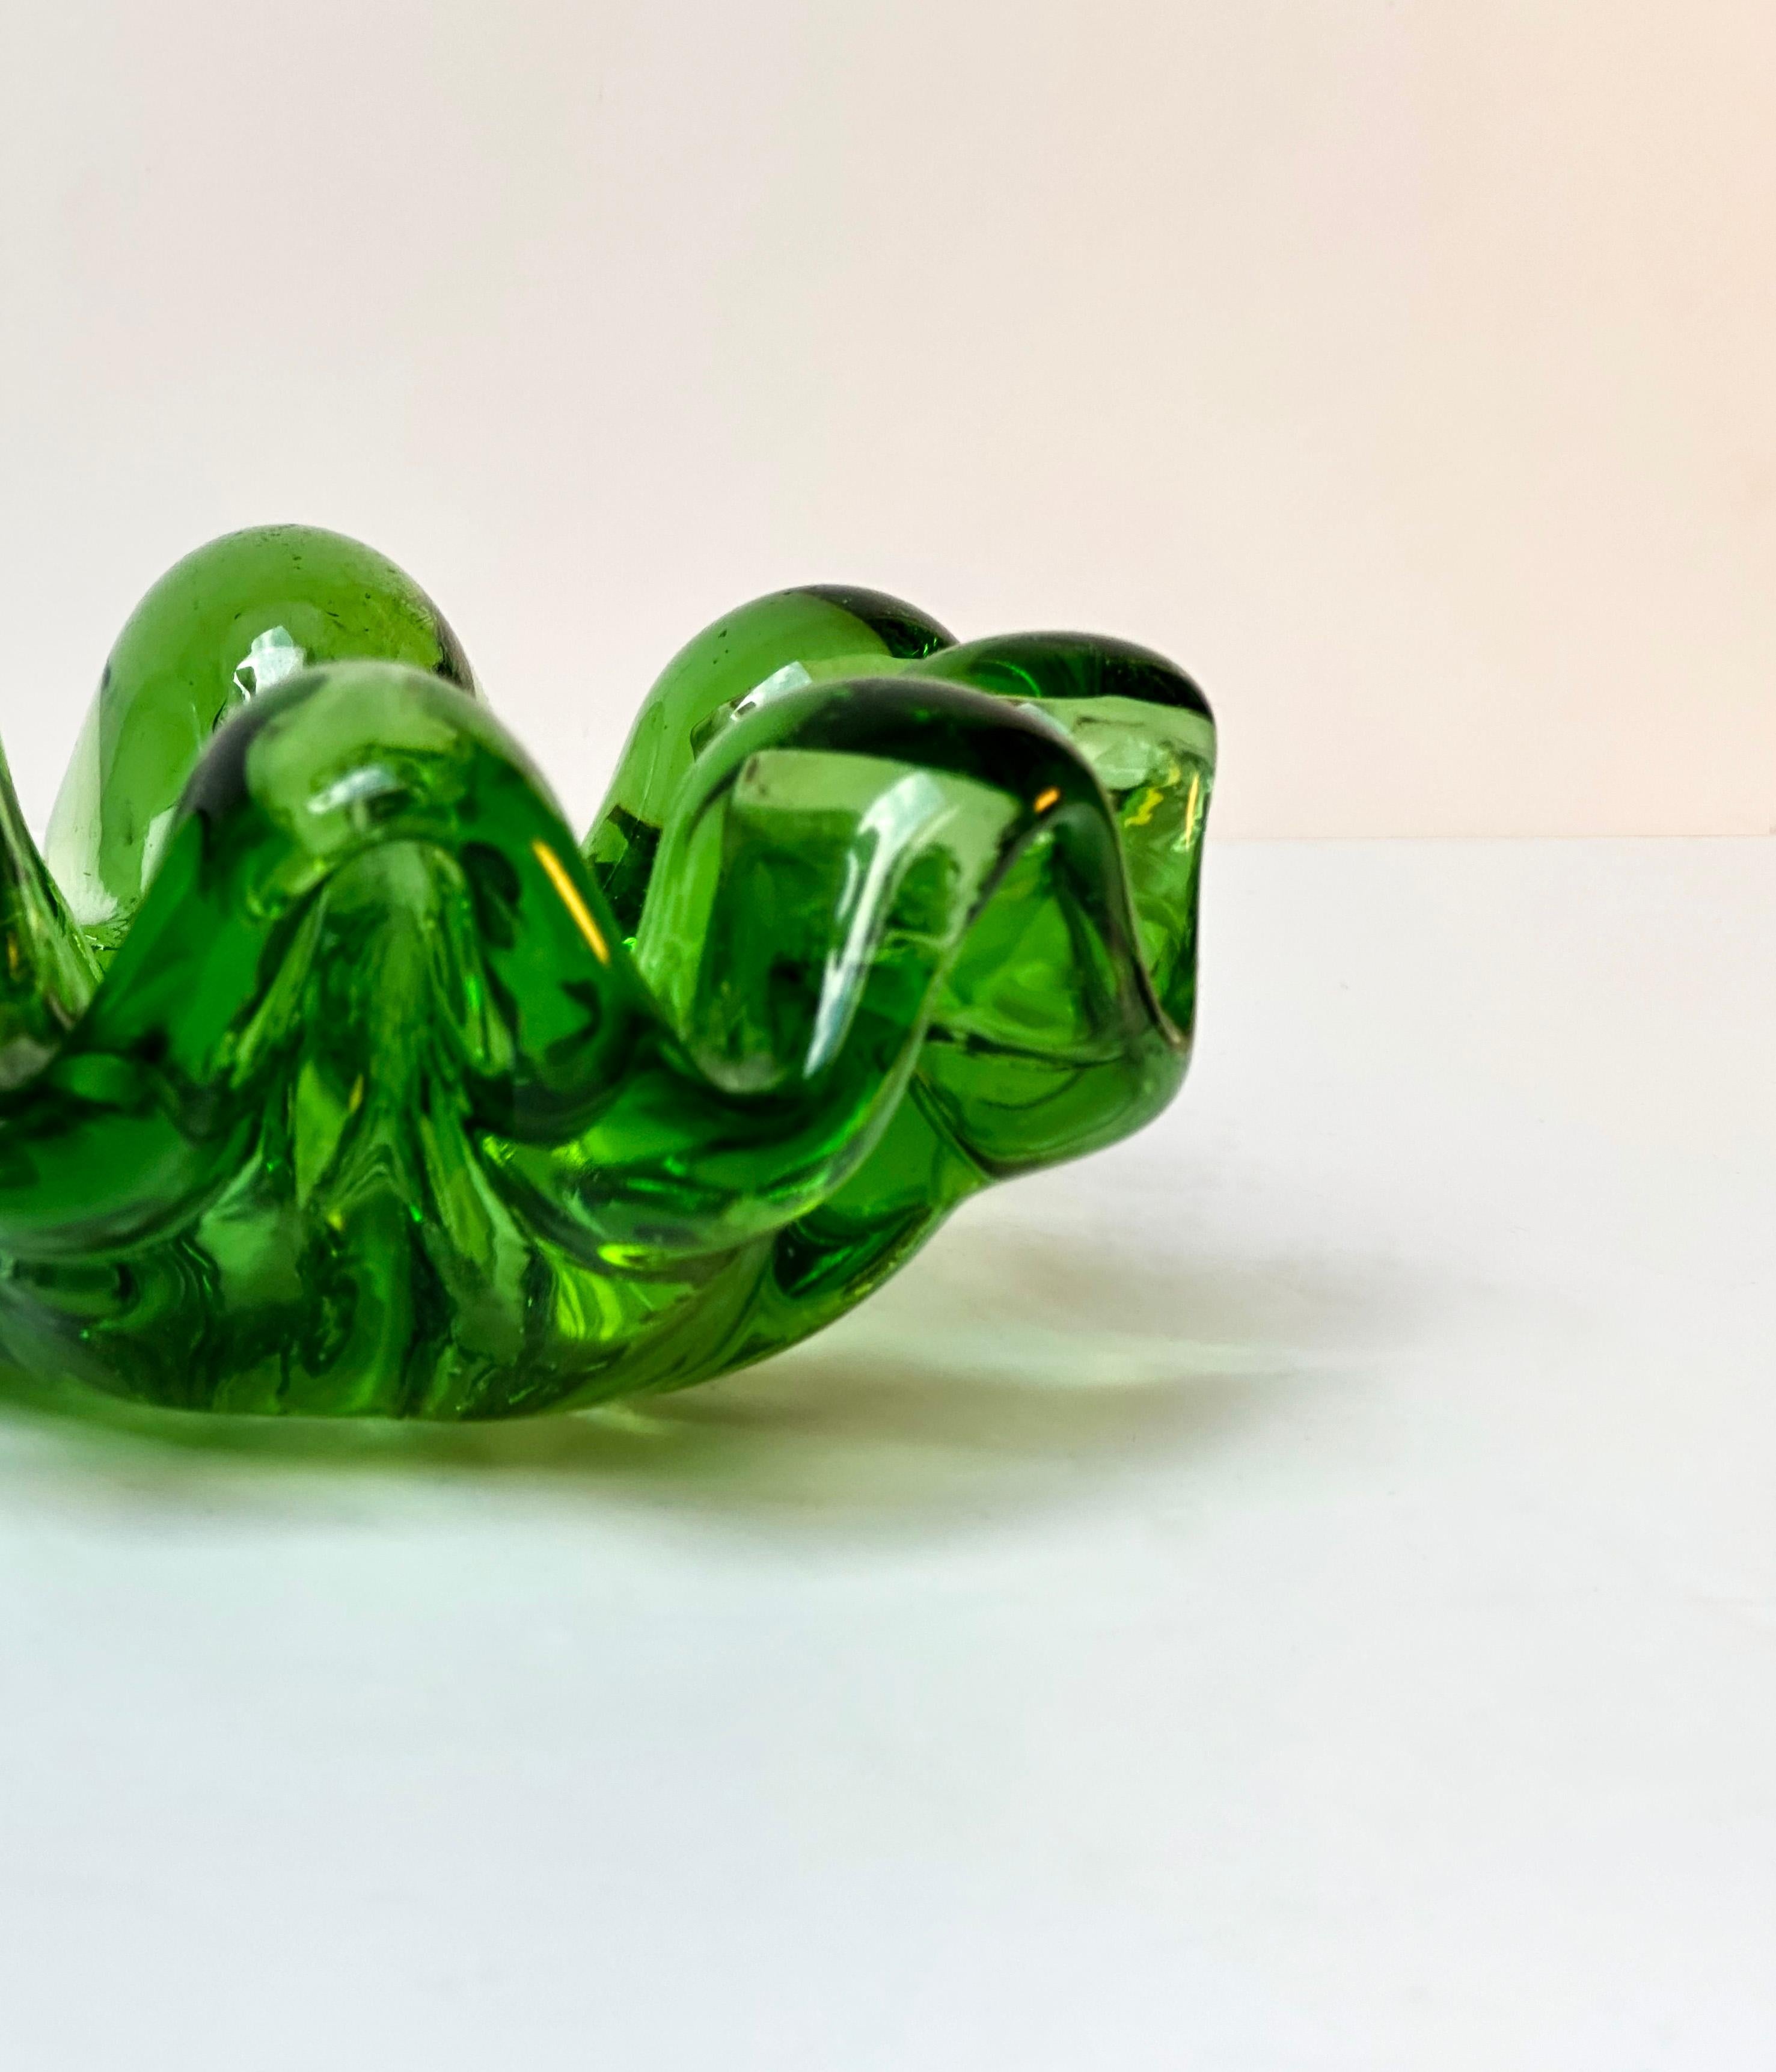 Ce plat en verre du milieu du siècle dégage un charme rétro. Il est fabriqué à partir d'un verre vert lumineux et brillant. Son design audacieux et vif s'inspire du plat emblématique 